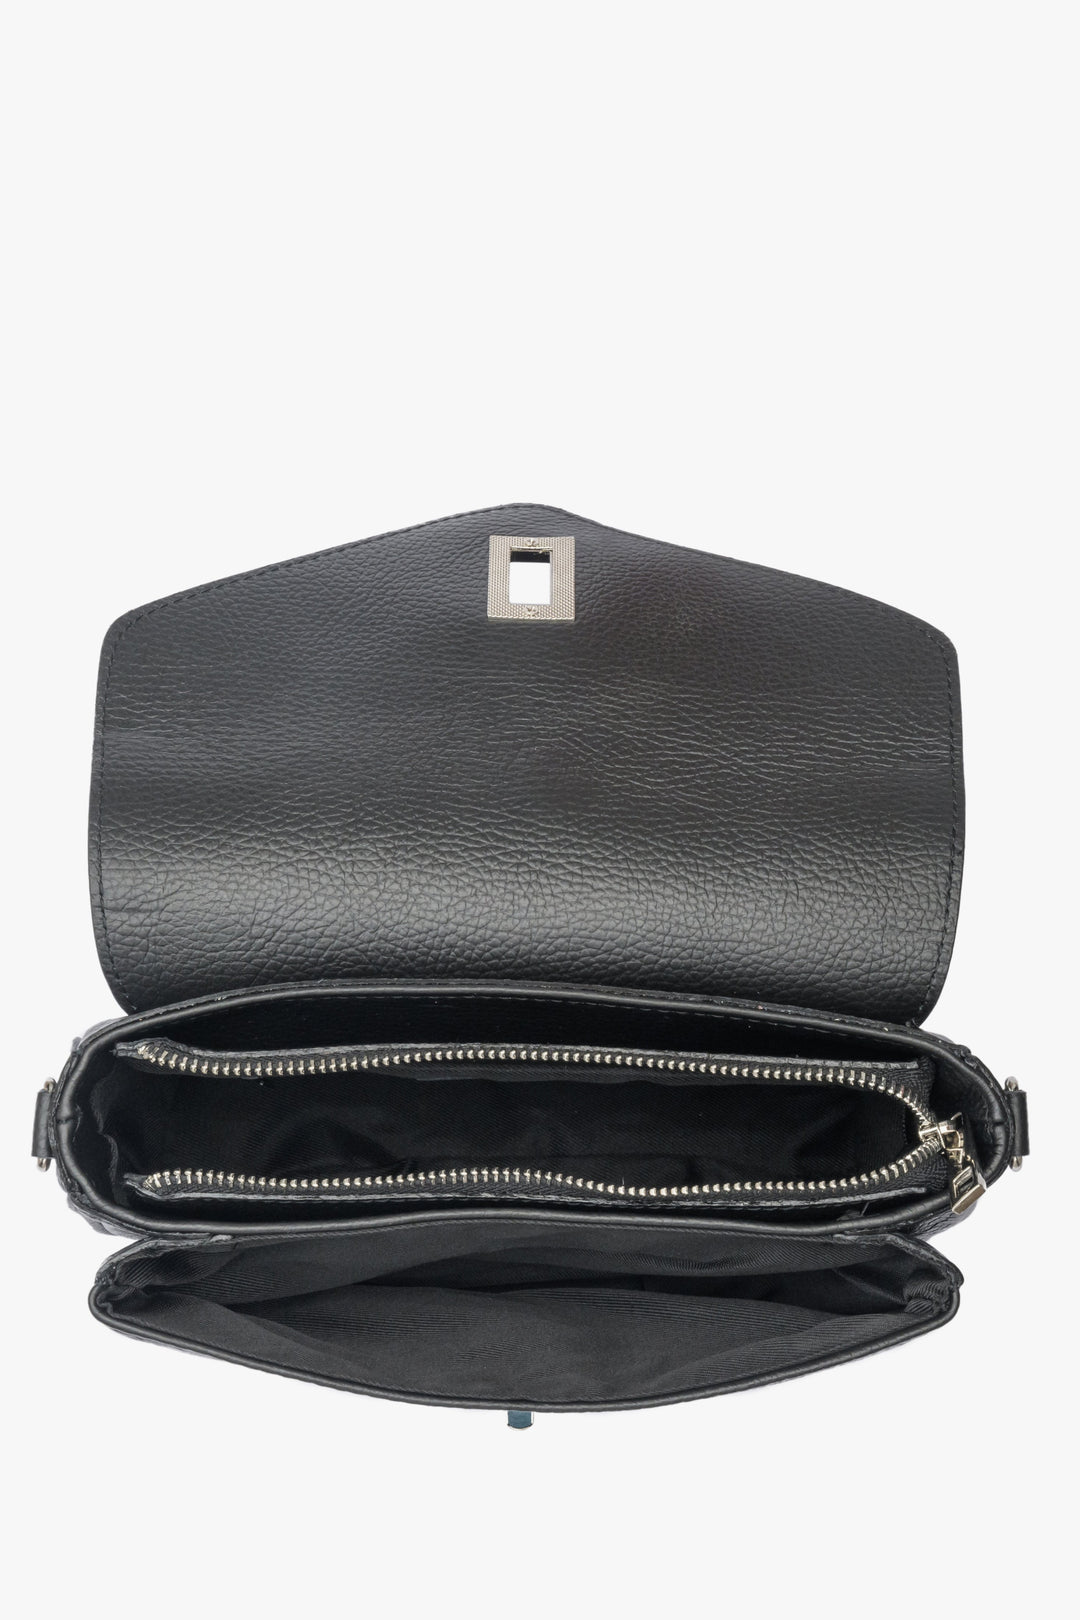 Leather black Estro women's shoulder bag - presentation of the lining.